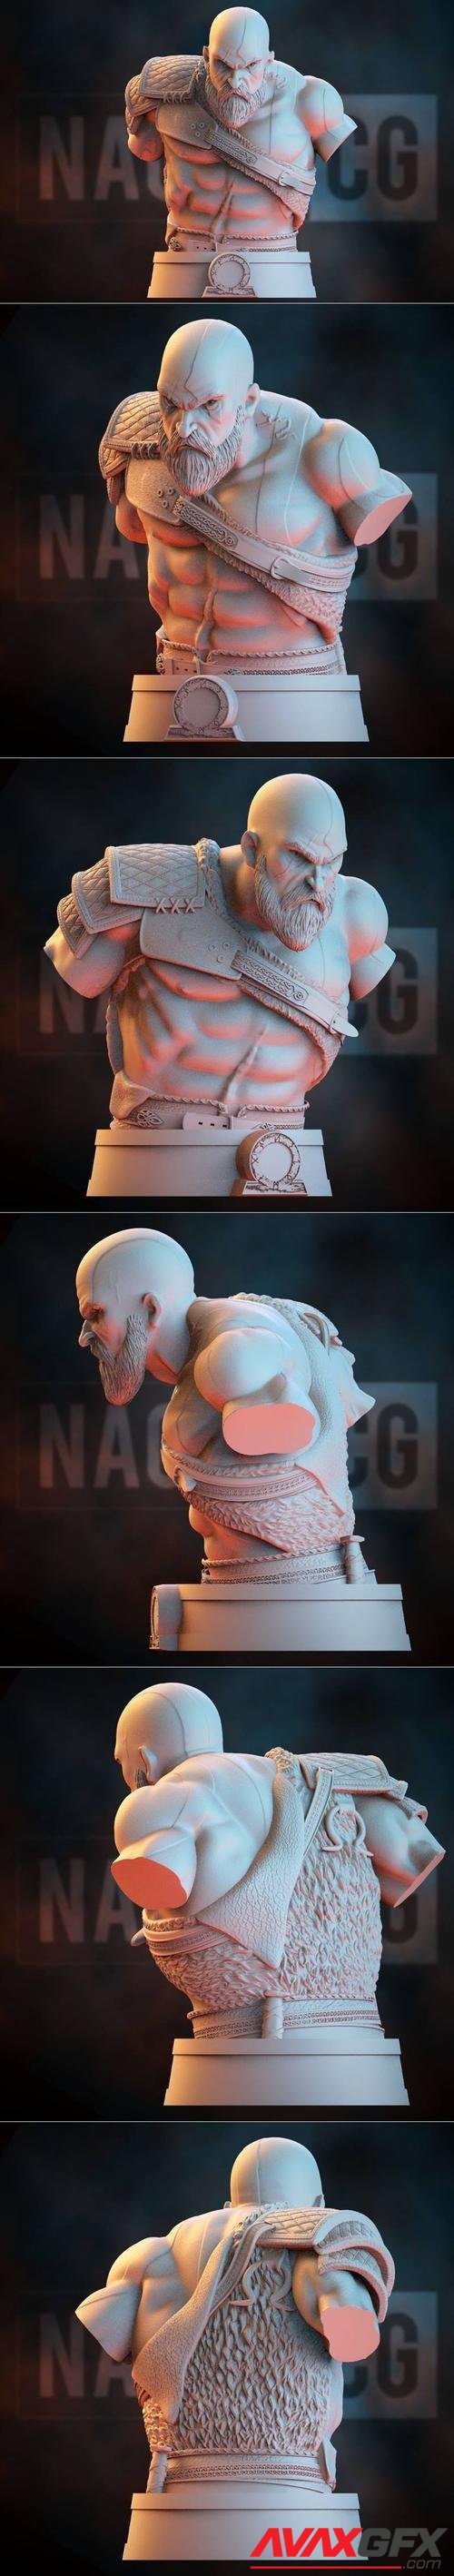 Kratos - God of War Bust - Fan Art – 3D Print